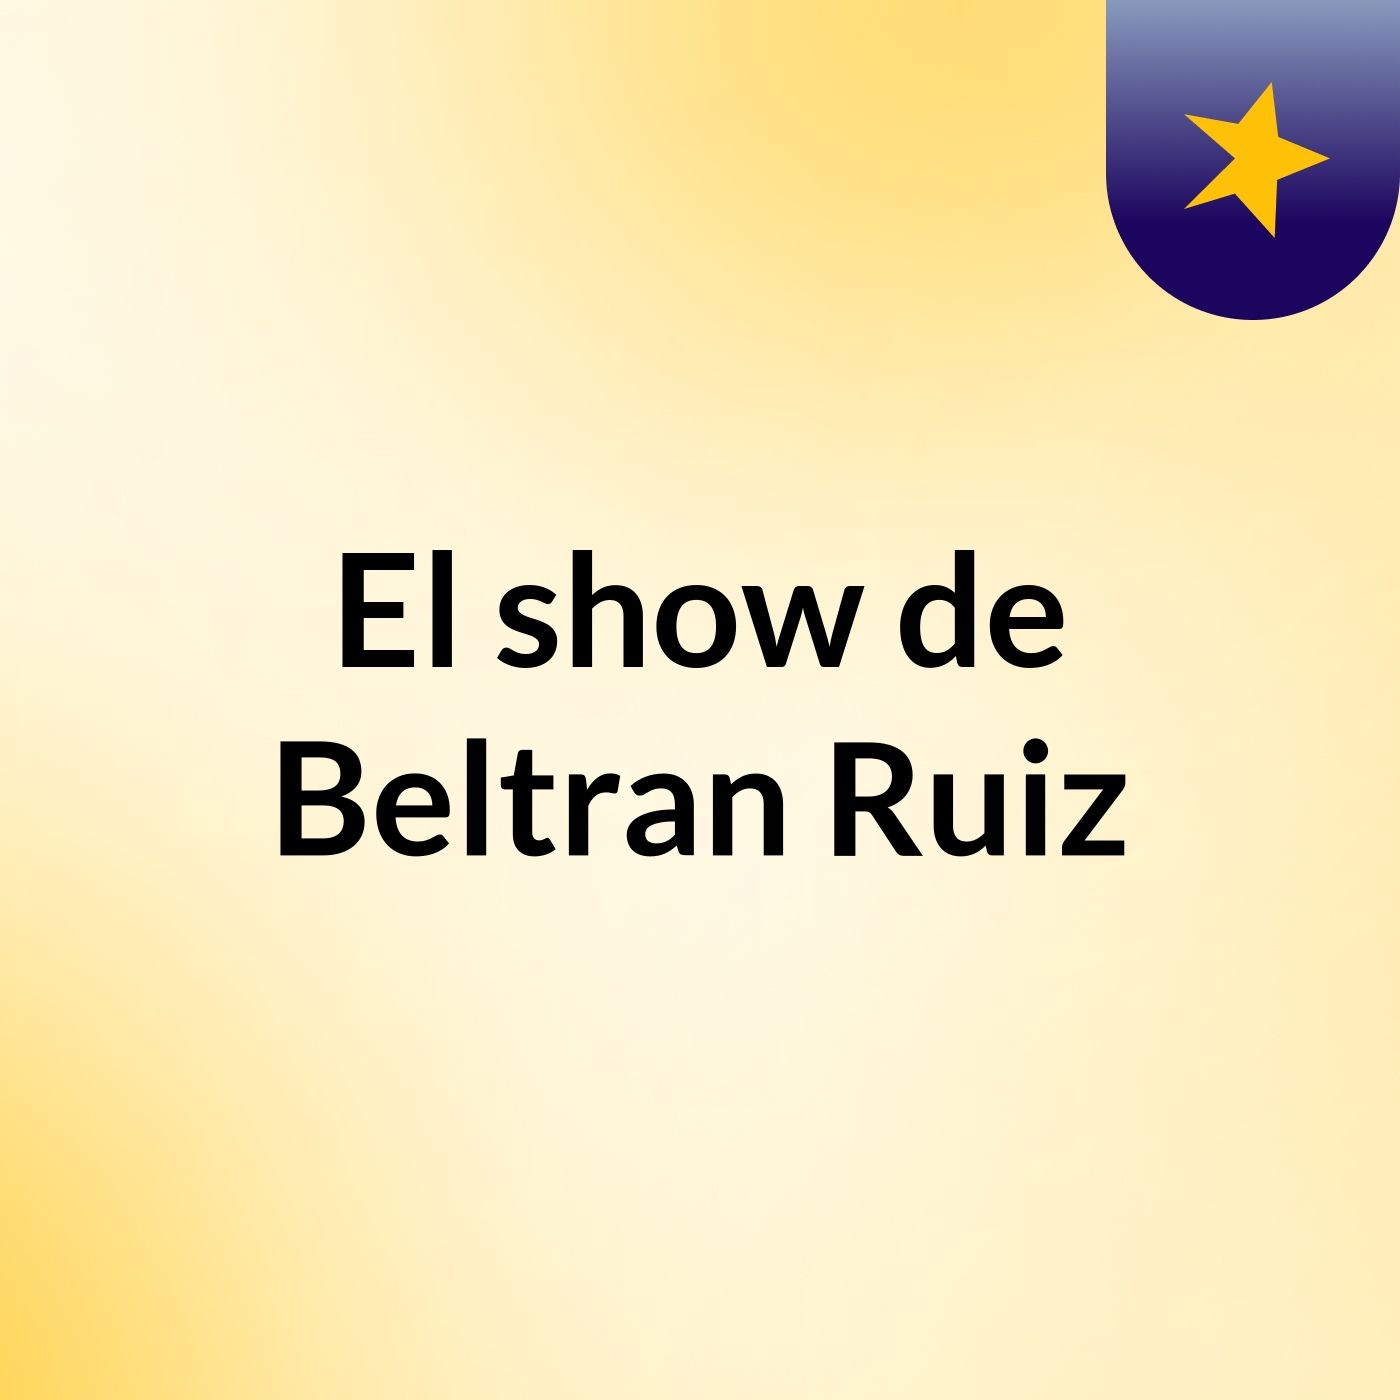 Episodio 3 - El show de Beltran Ruiz